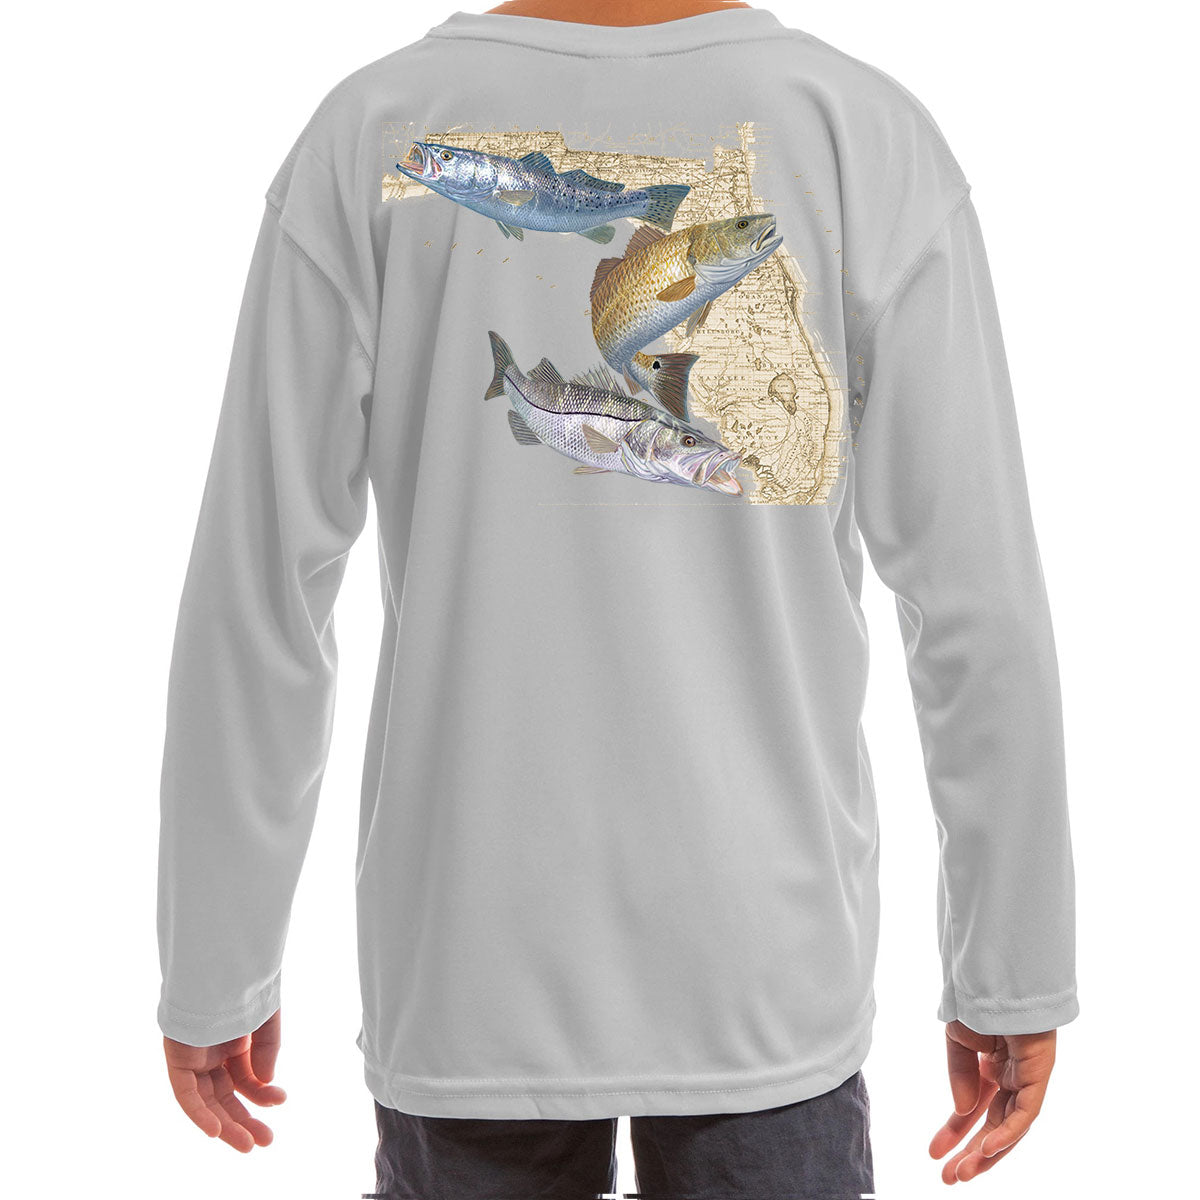 Kids Fishing Shirt, Mountain Trout, Toddler Fly Fishing Shirt, Trout  Fishing Shirt, Youth Fishing Shirt, Trout Shirt, Children's Fishing -   Canada